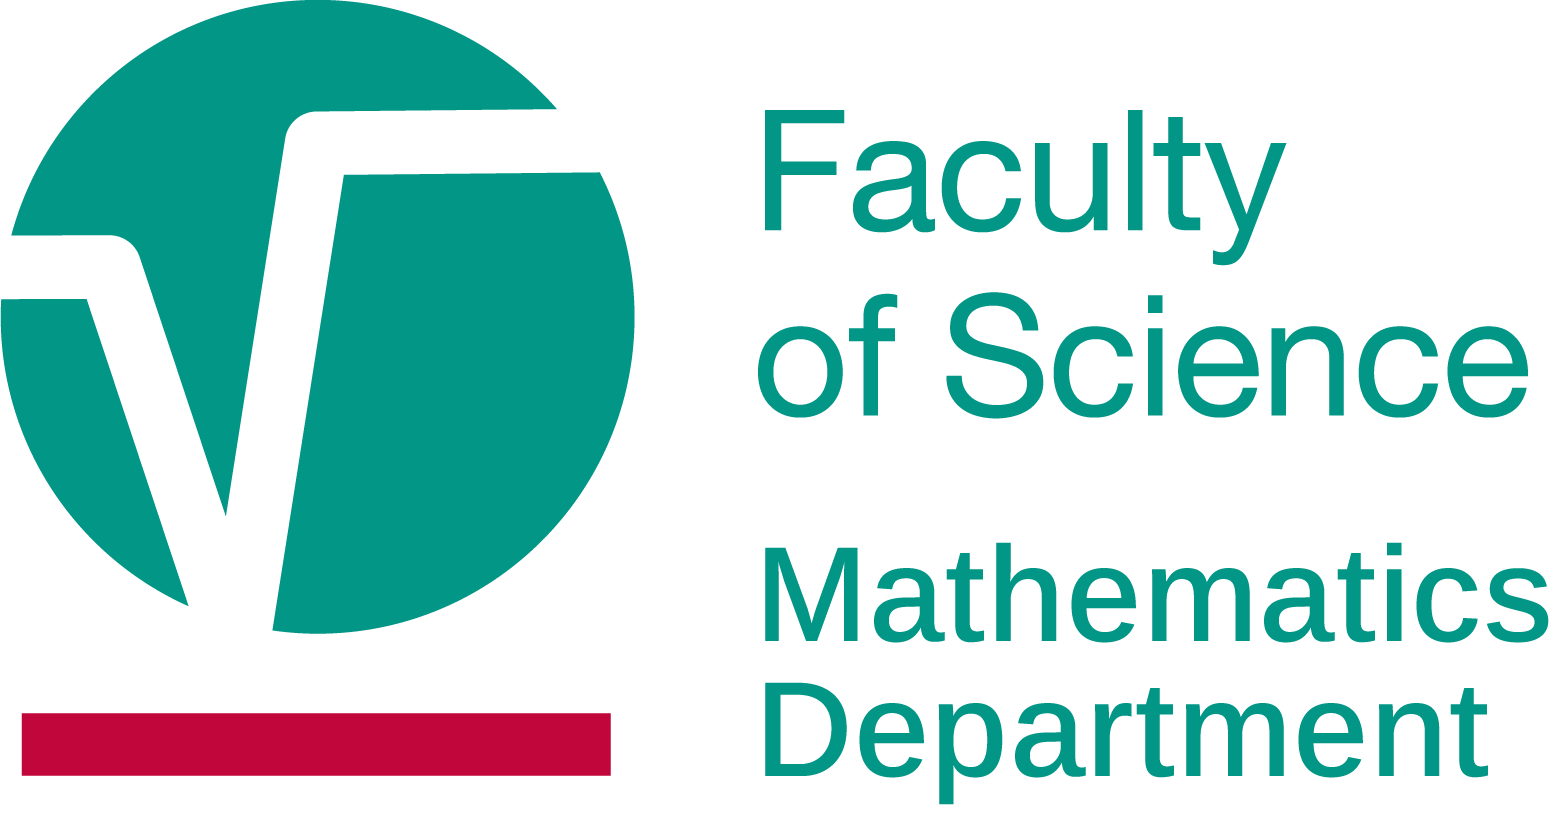 FS – Département de mathématique